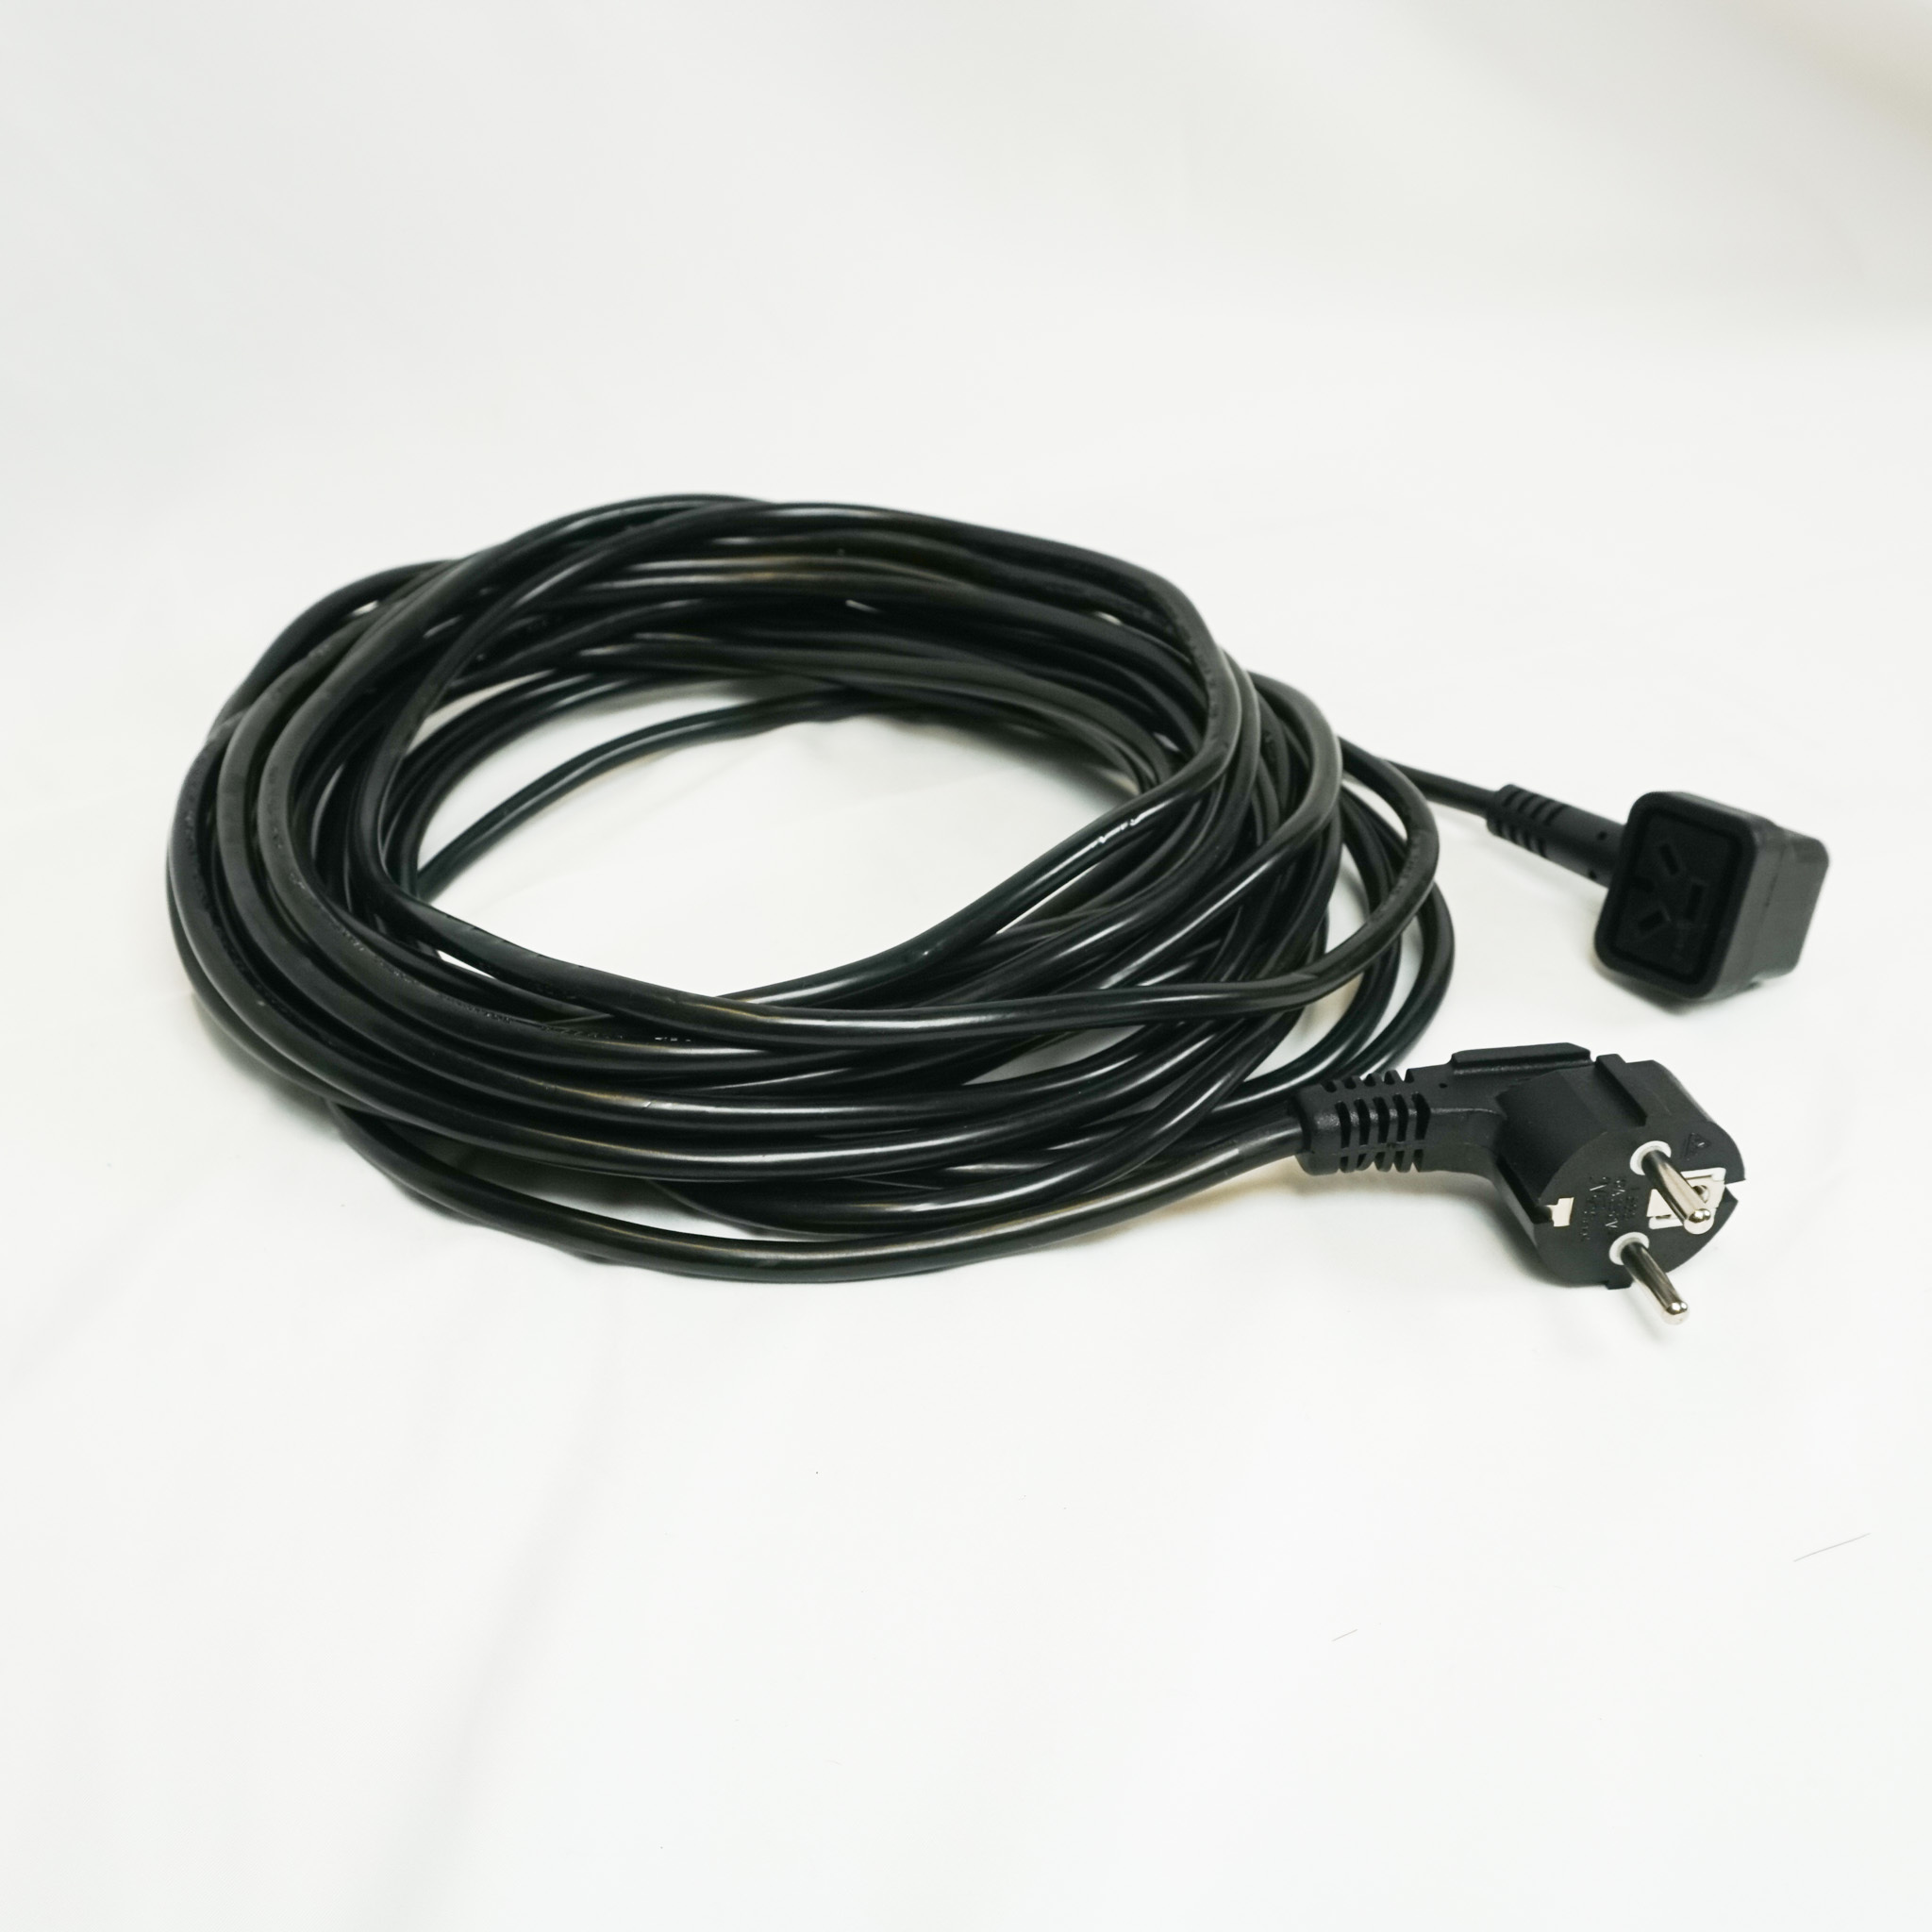 Câble d alimentation Nuplug compatible avec aspirateurs Numatic NVQ, NVP, DBQ, NQS... - Alternative pour référence d origine Numatic : 236123, 236014 - Longueur : 12m